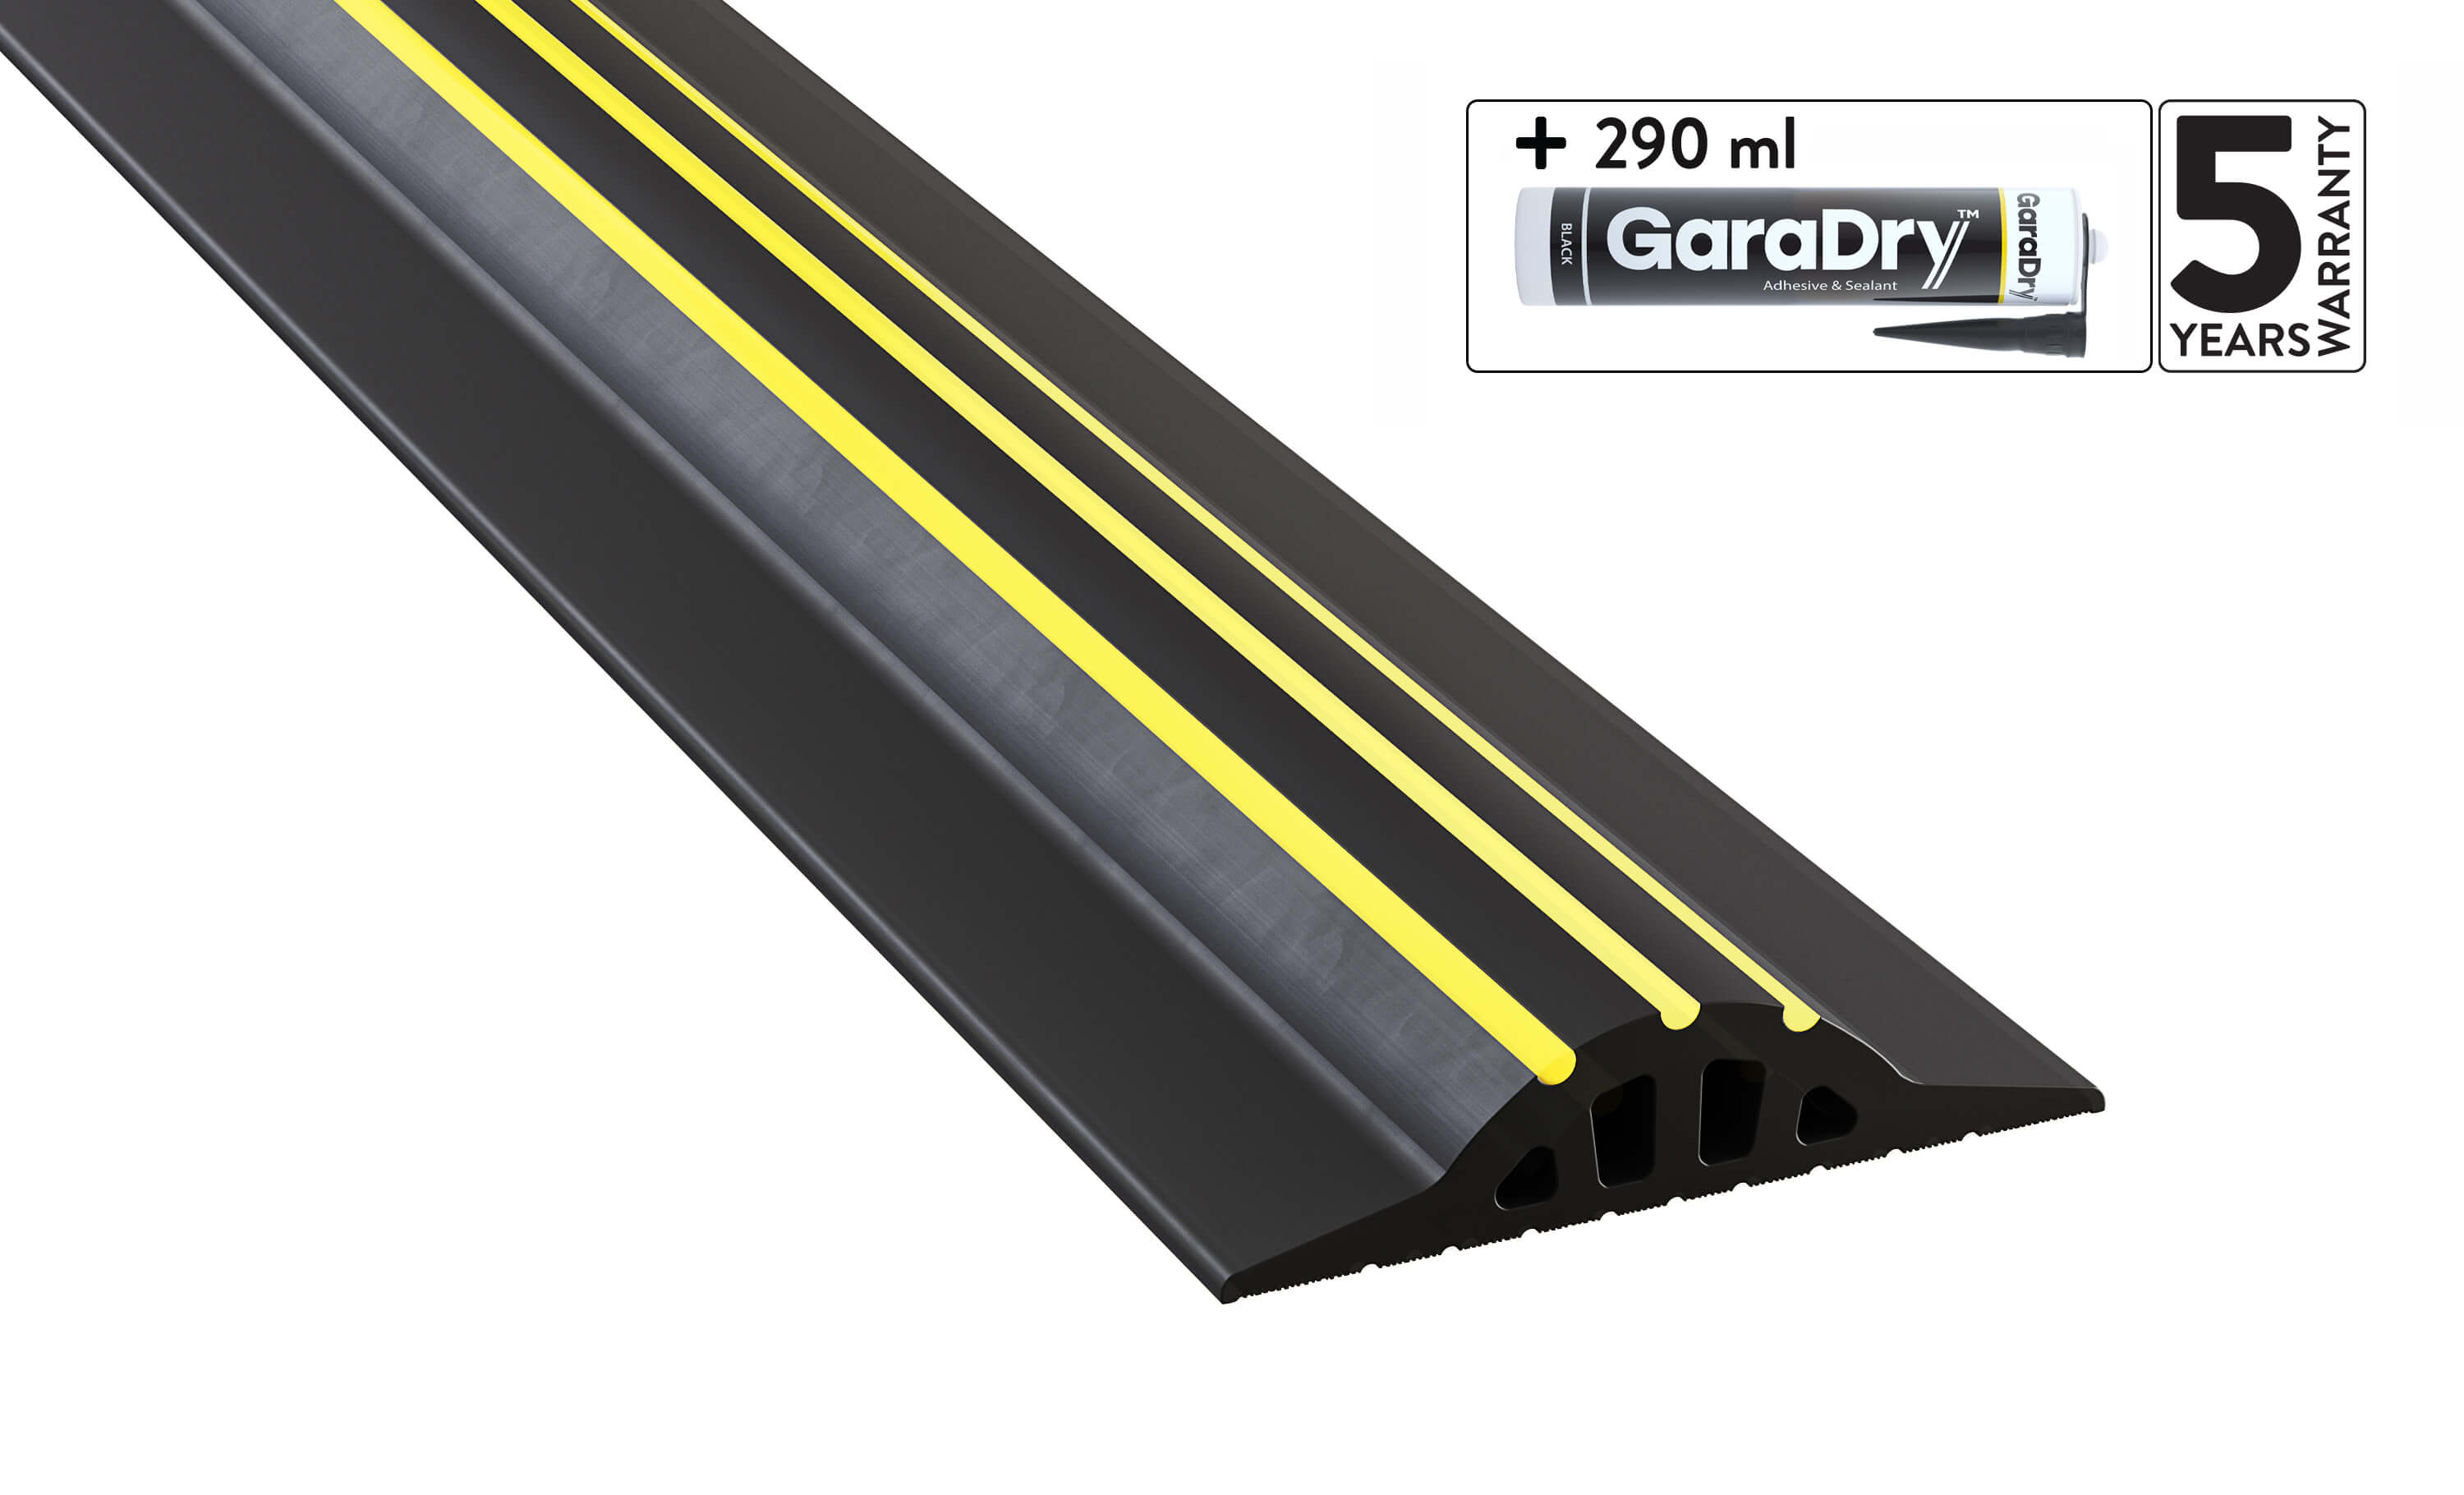 https://uk.garadry.com/cdn/shop/products/25mm-garage-door-threshold-seal-kit.jpg?v=1668418760